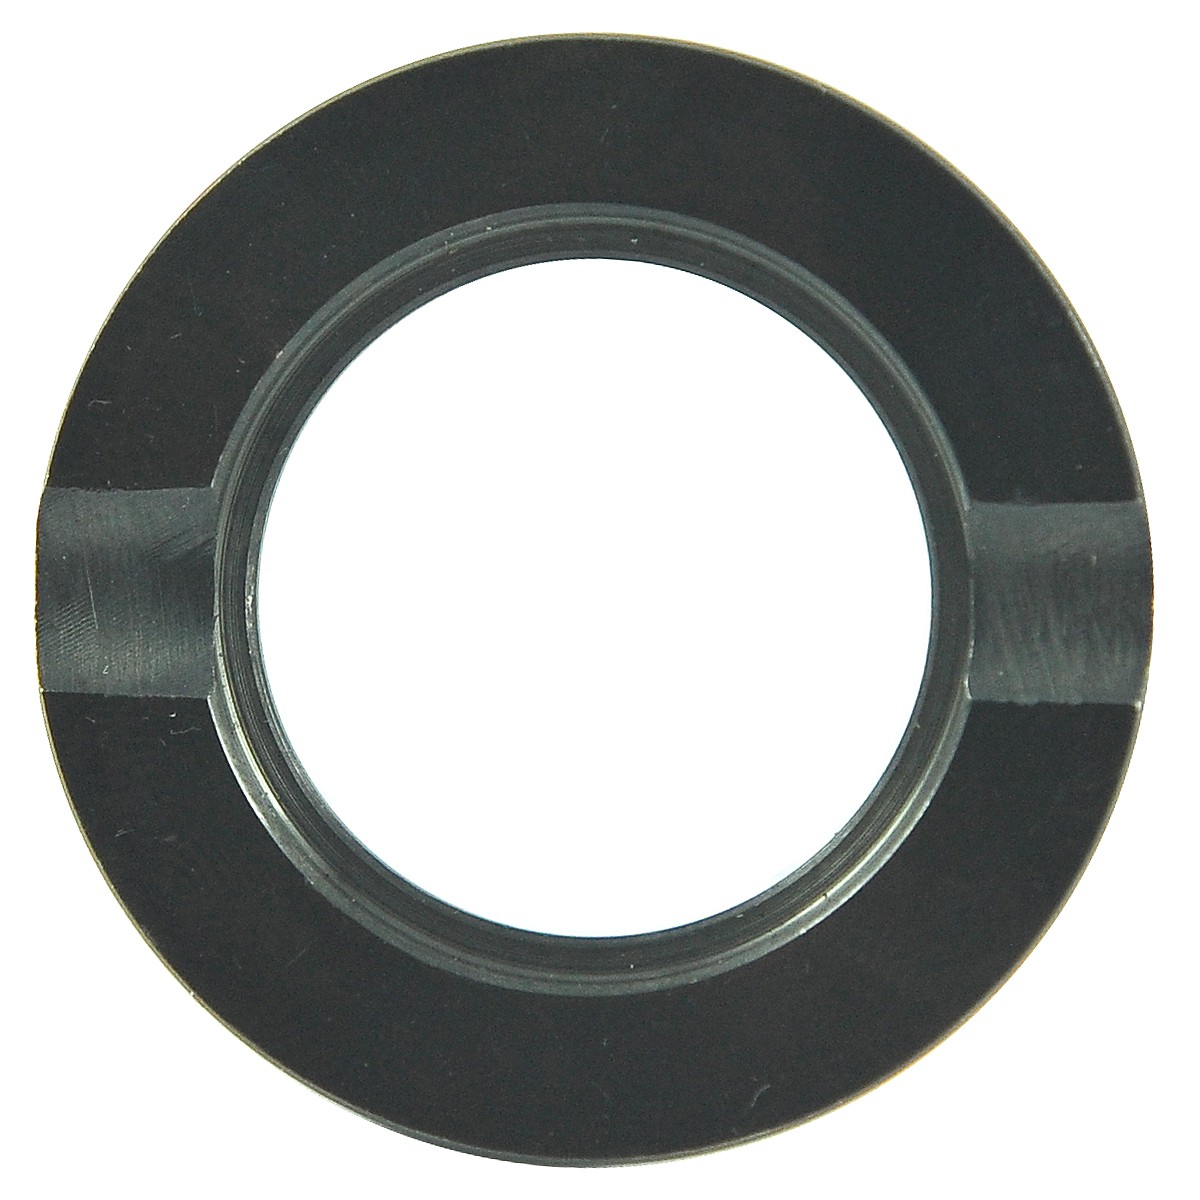 PTO/PTO bearing flange / Ø 25/42 mm / Kubota L4701/L4708 / TC403-22350 / 5-26-215-33